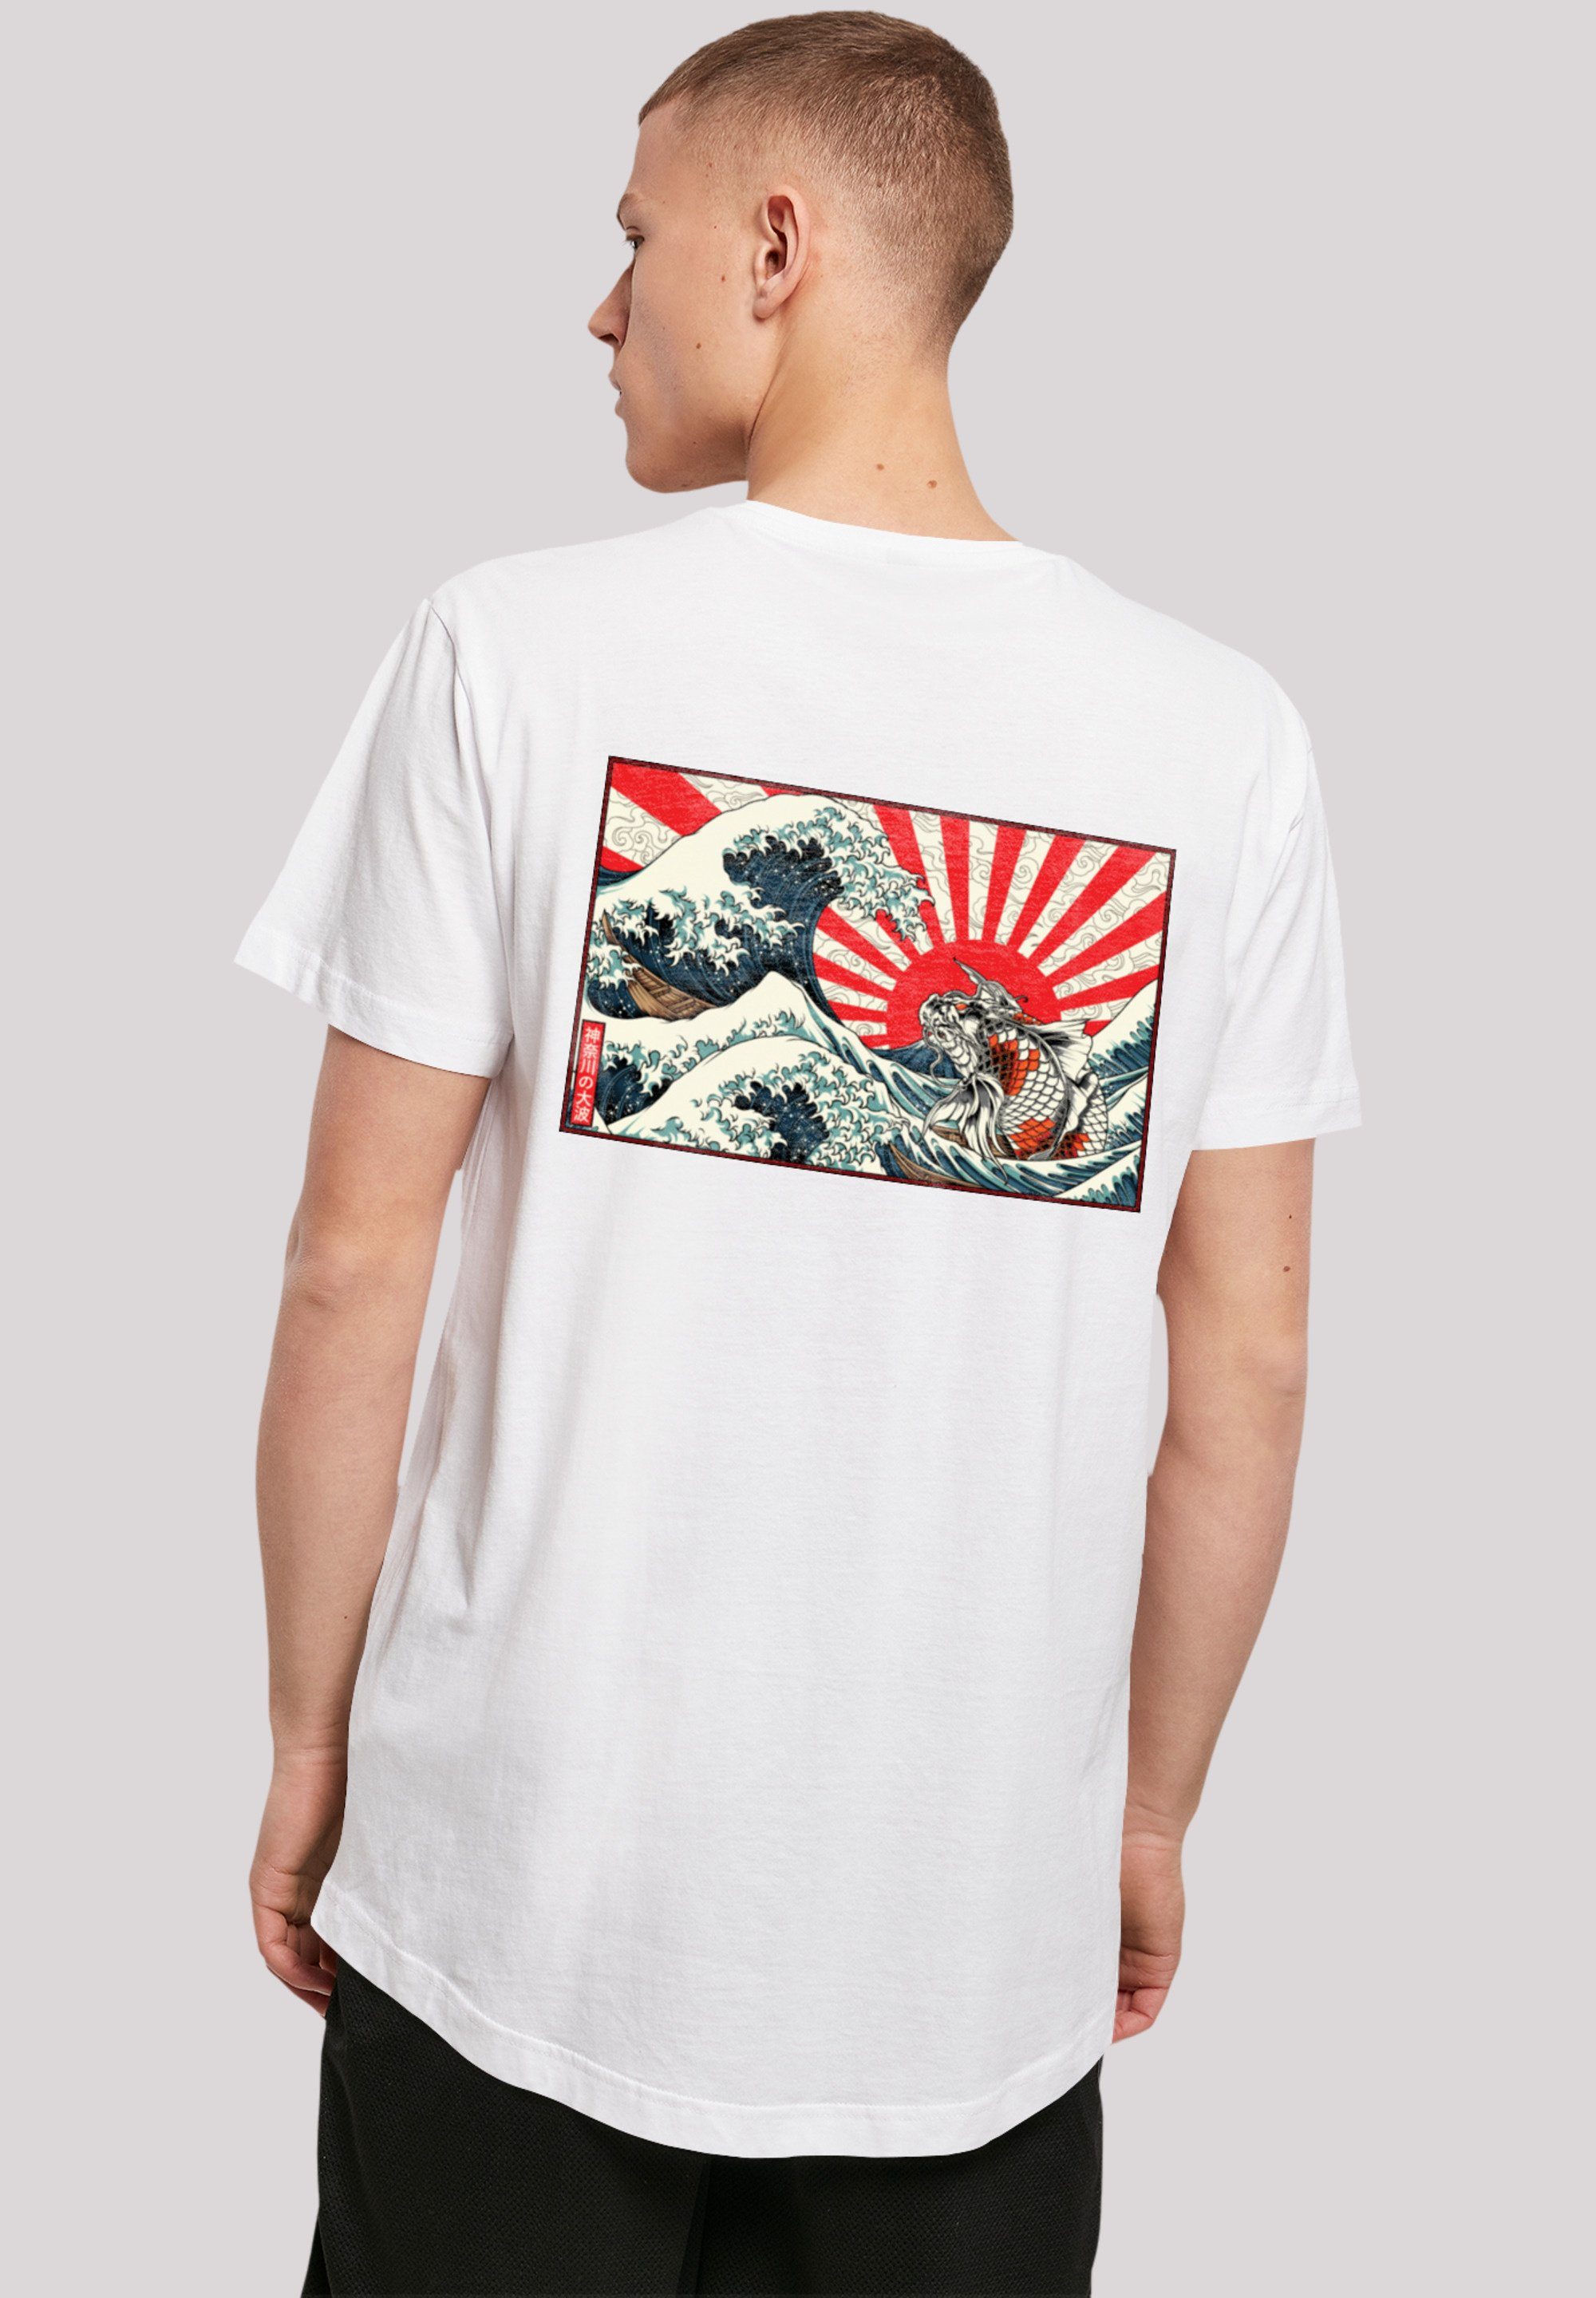 F4NT4STIC T-Shirt Tragekomfort Welle Sehr mit Print, hohem Baumwollstoff weicher Kanagawa Japan